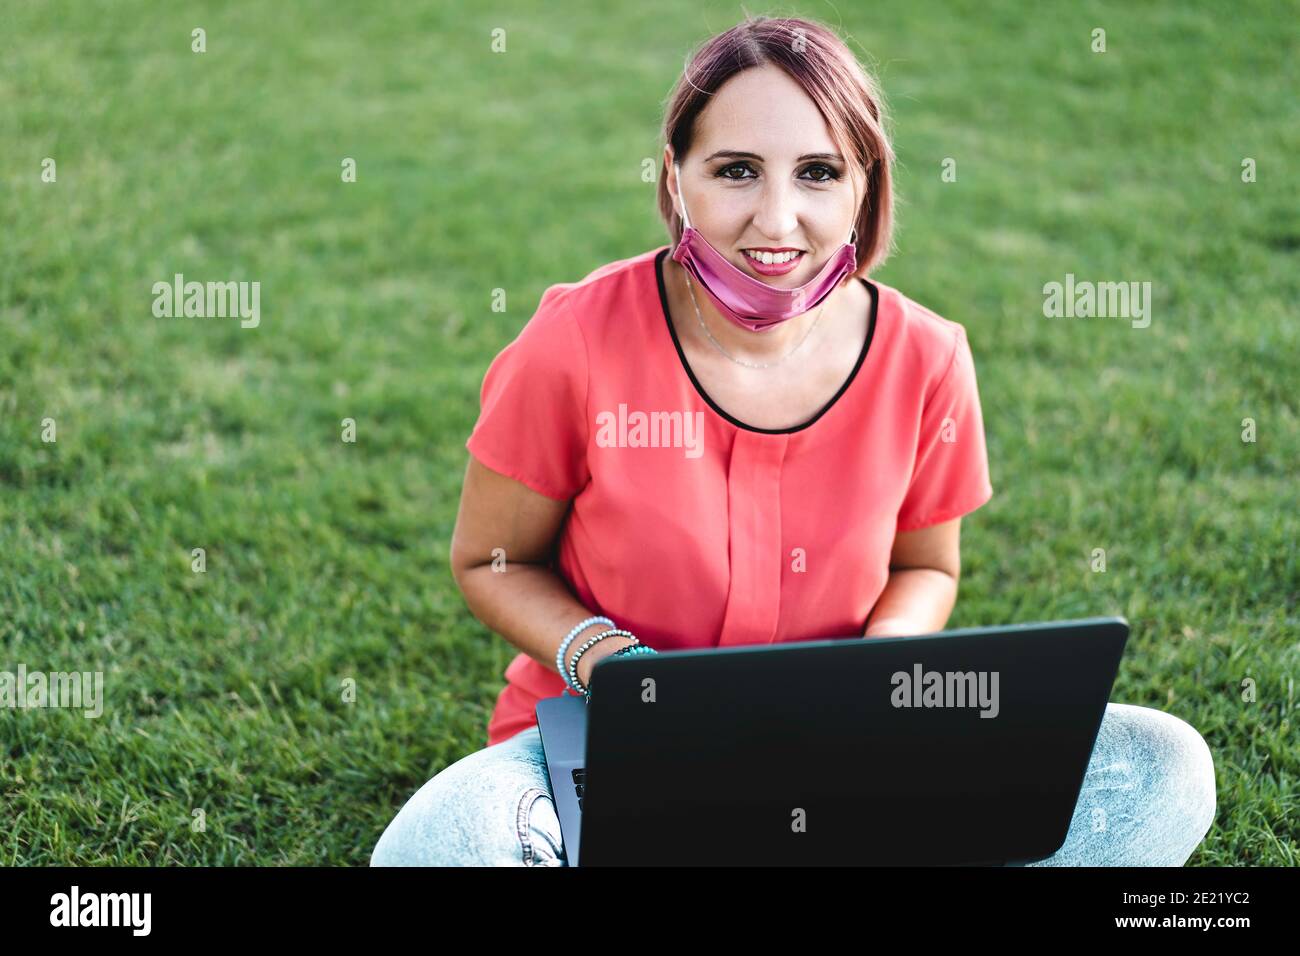 Frau 40 Jahre alt arbeitet im Freien mit Laptop während Coronavirus Outbreak - lächelnde weibliche Unternehmer sitzen auf Rasen mit persönlichen Während des Computers Stockfoto